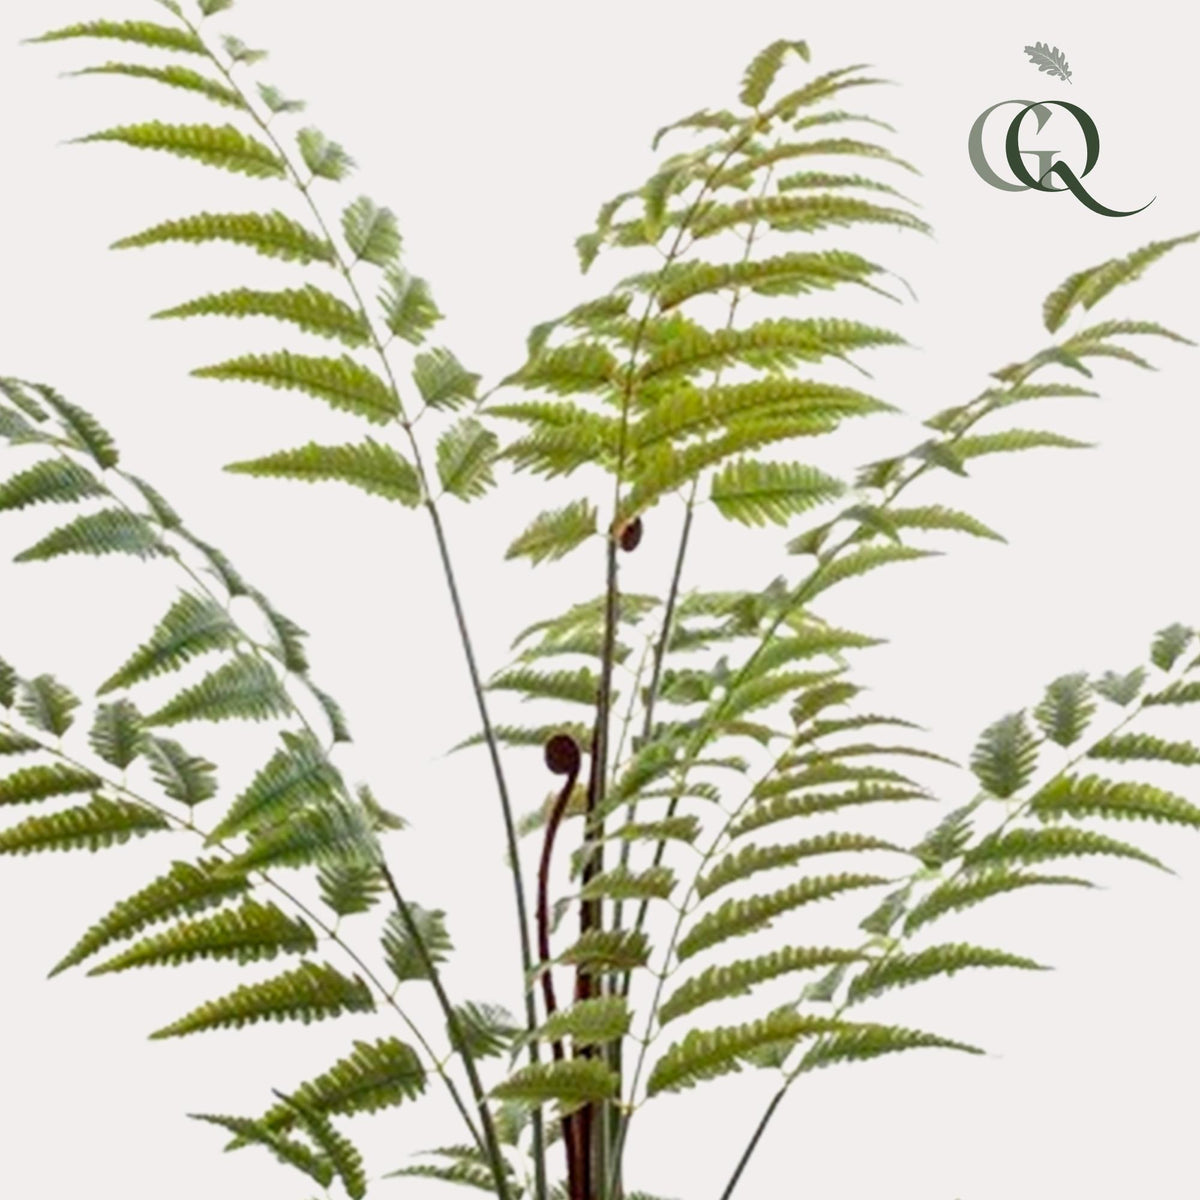 Rumohra Adiantiformis - Lederfarn - 150 cm - kunstpflanze